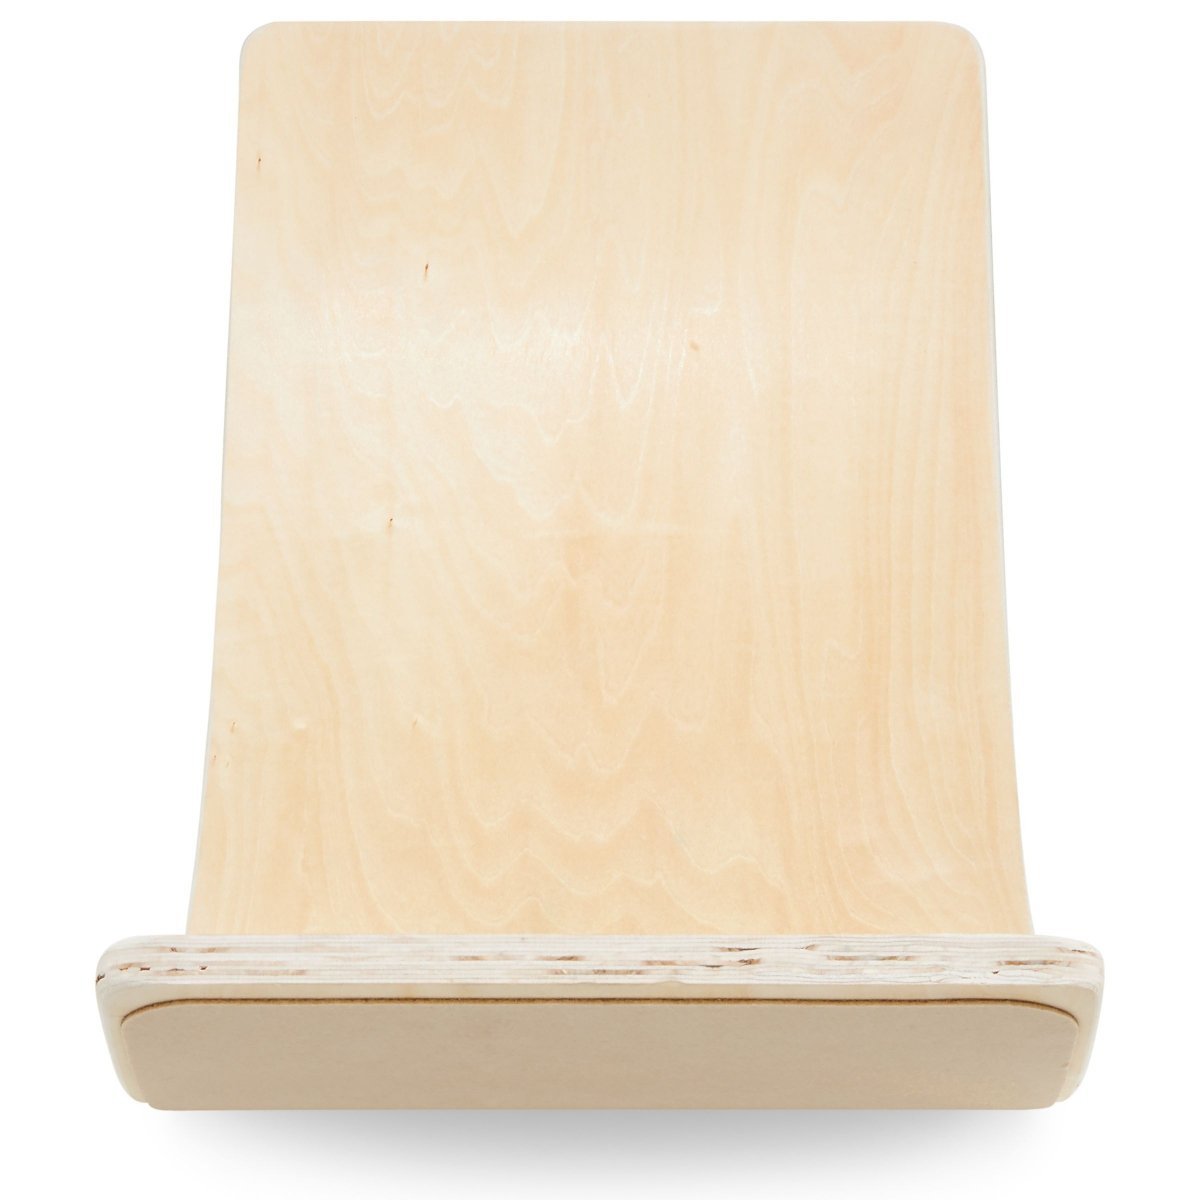 Drewniana deska do balansowania - bujak balansowy